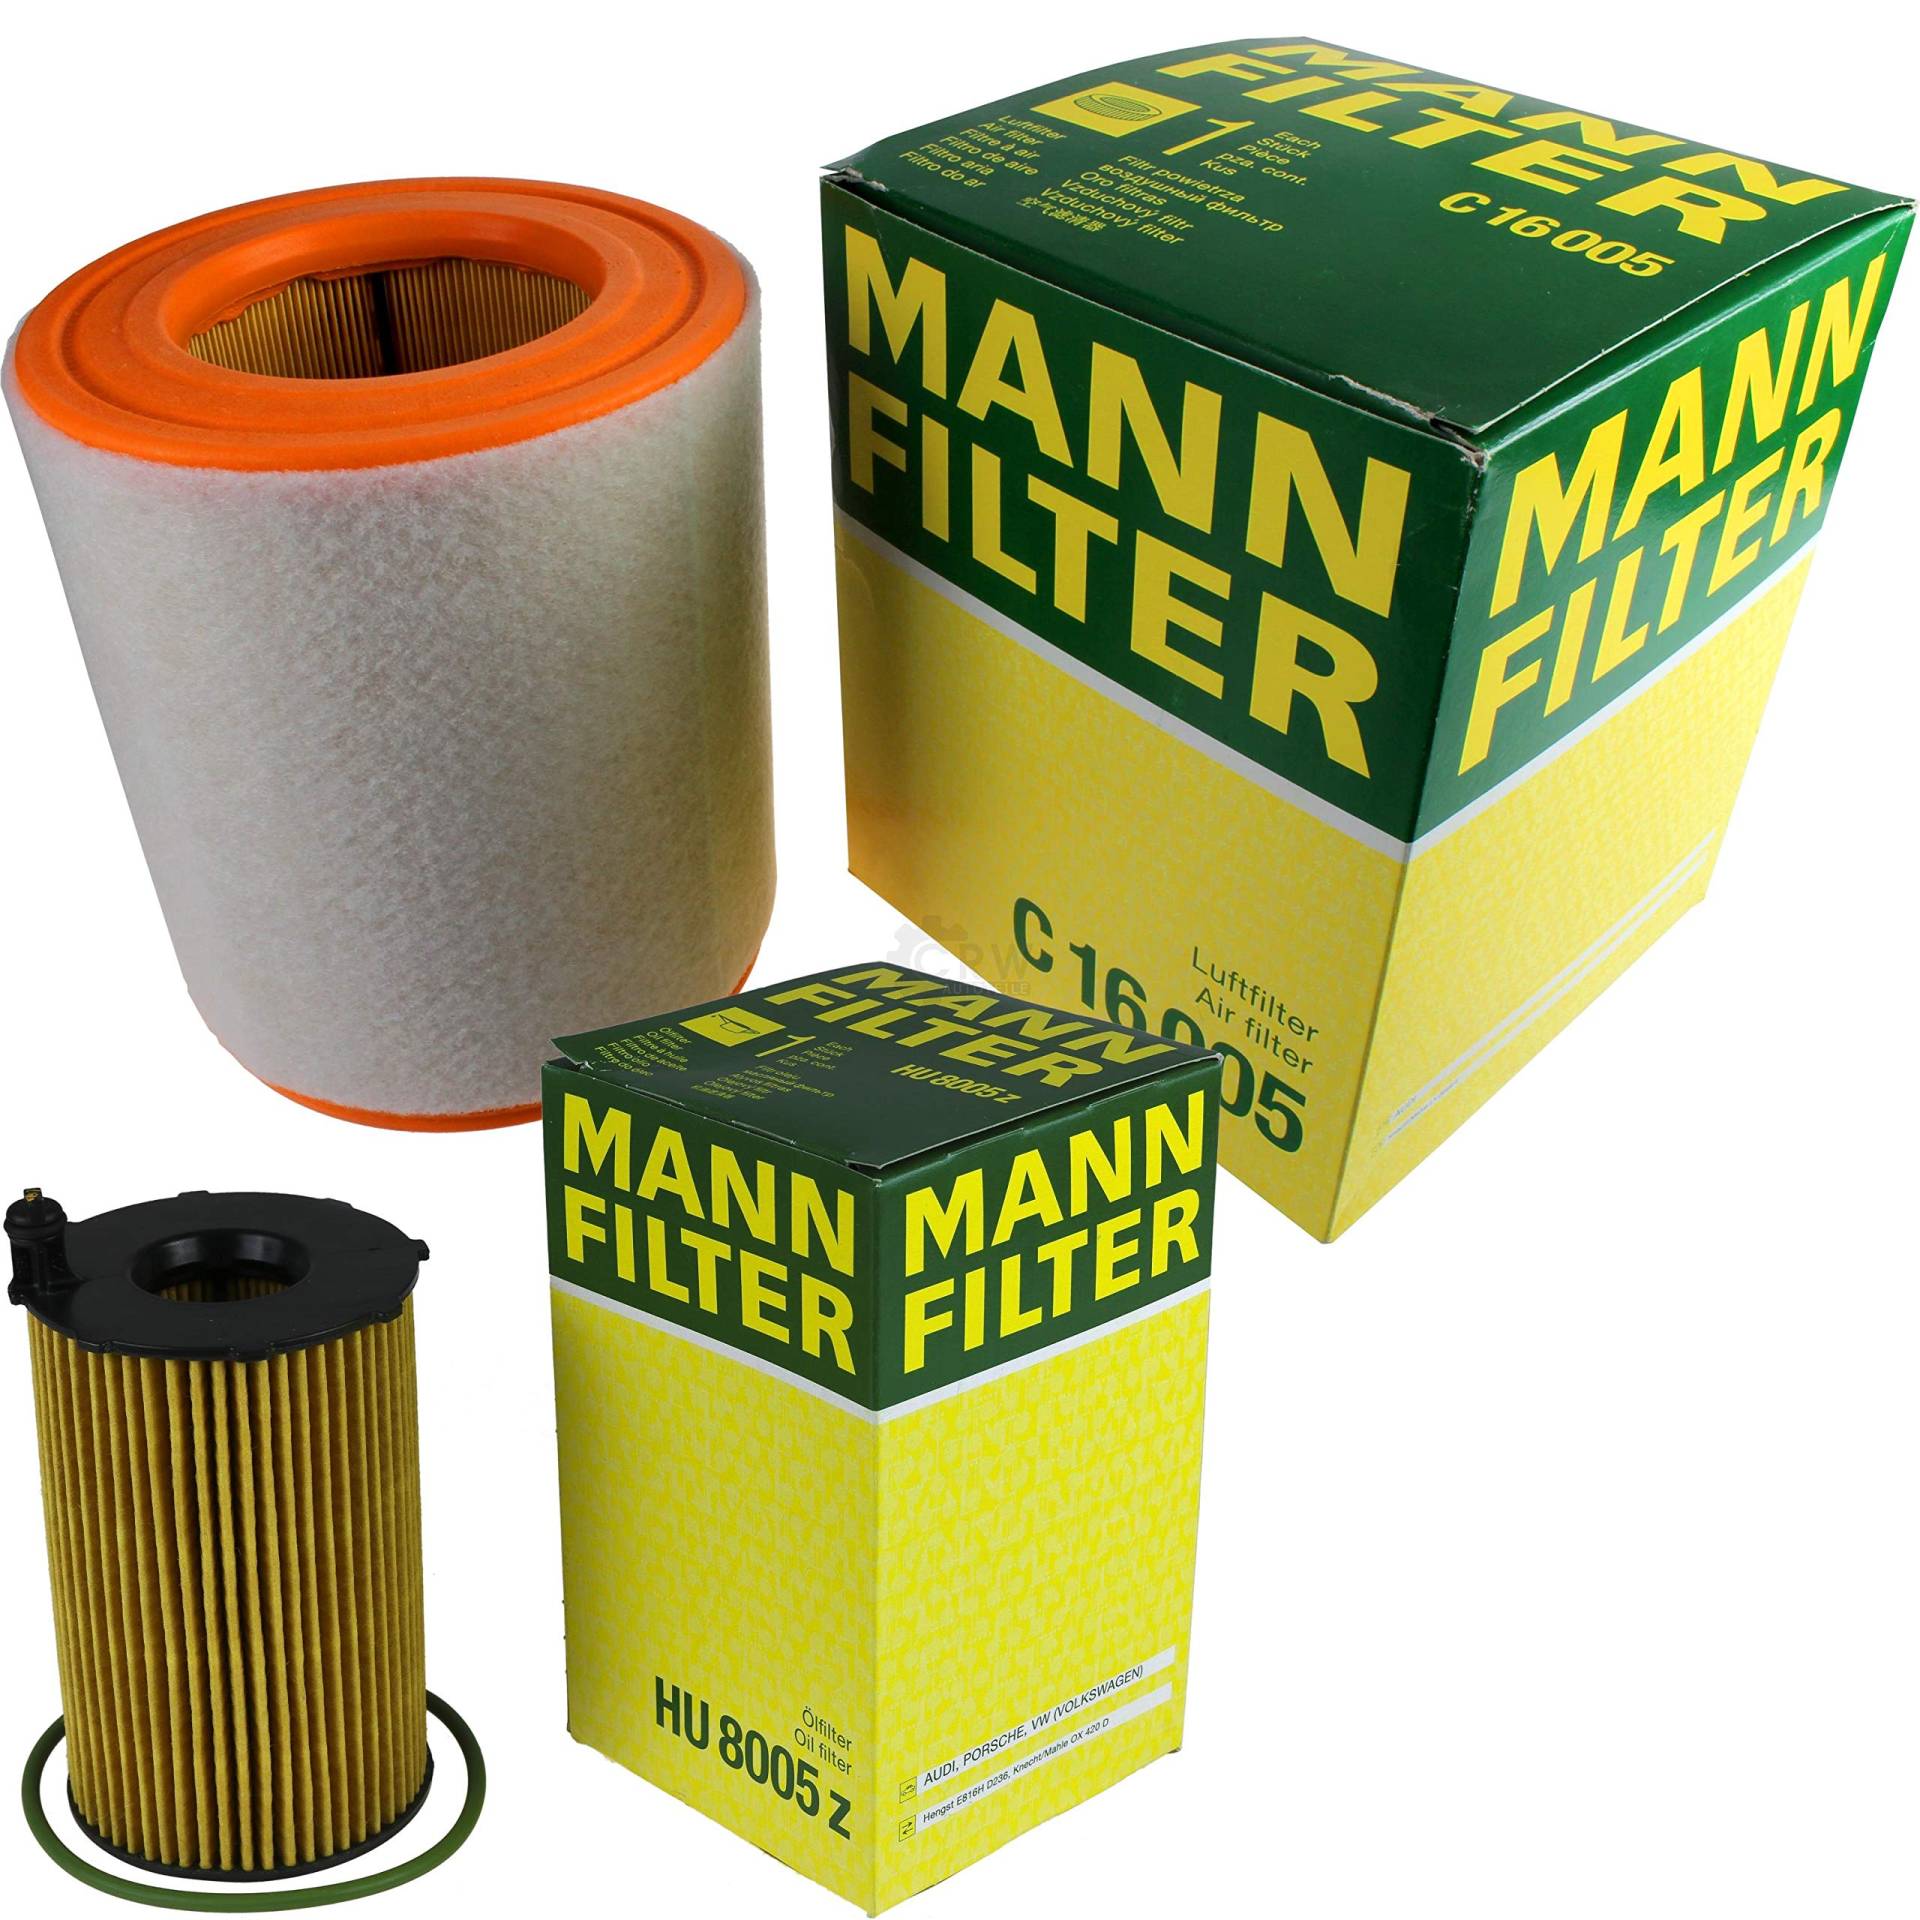 MANN-FILTER Inspektions Set Inspektionspaket Luftfilter Ölfilter von Diederichs